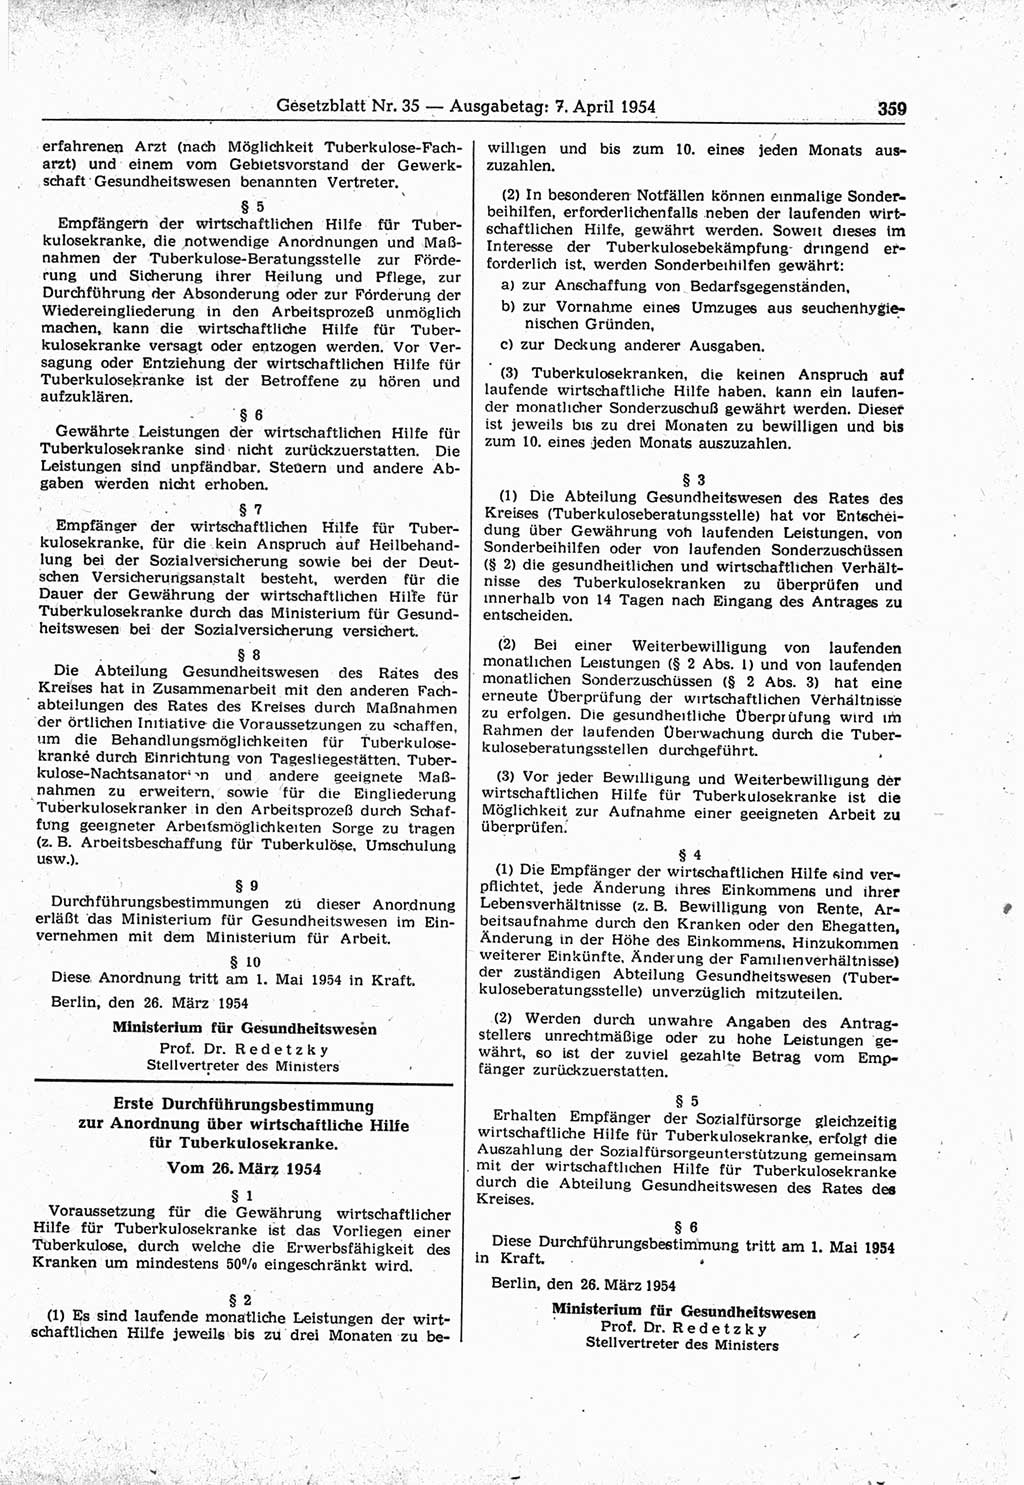 Gesetzblatt (GBl.) der Deutschen Demokratischen Republik (DDR) 1954, Seite 359 (GBl. DDR 1954, S. 359)